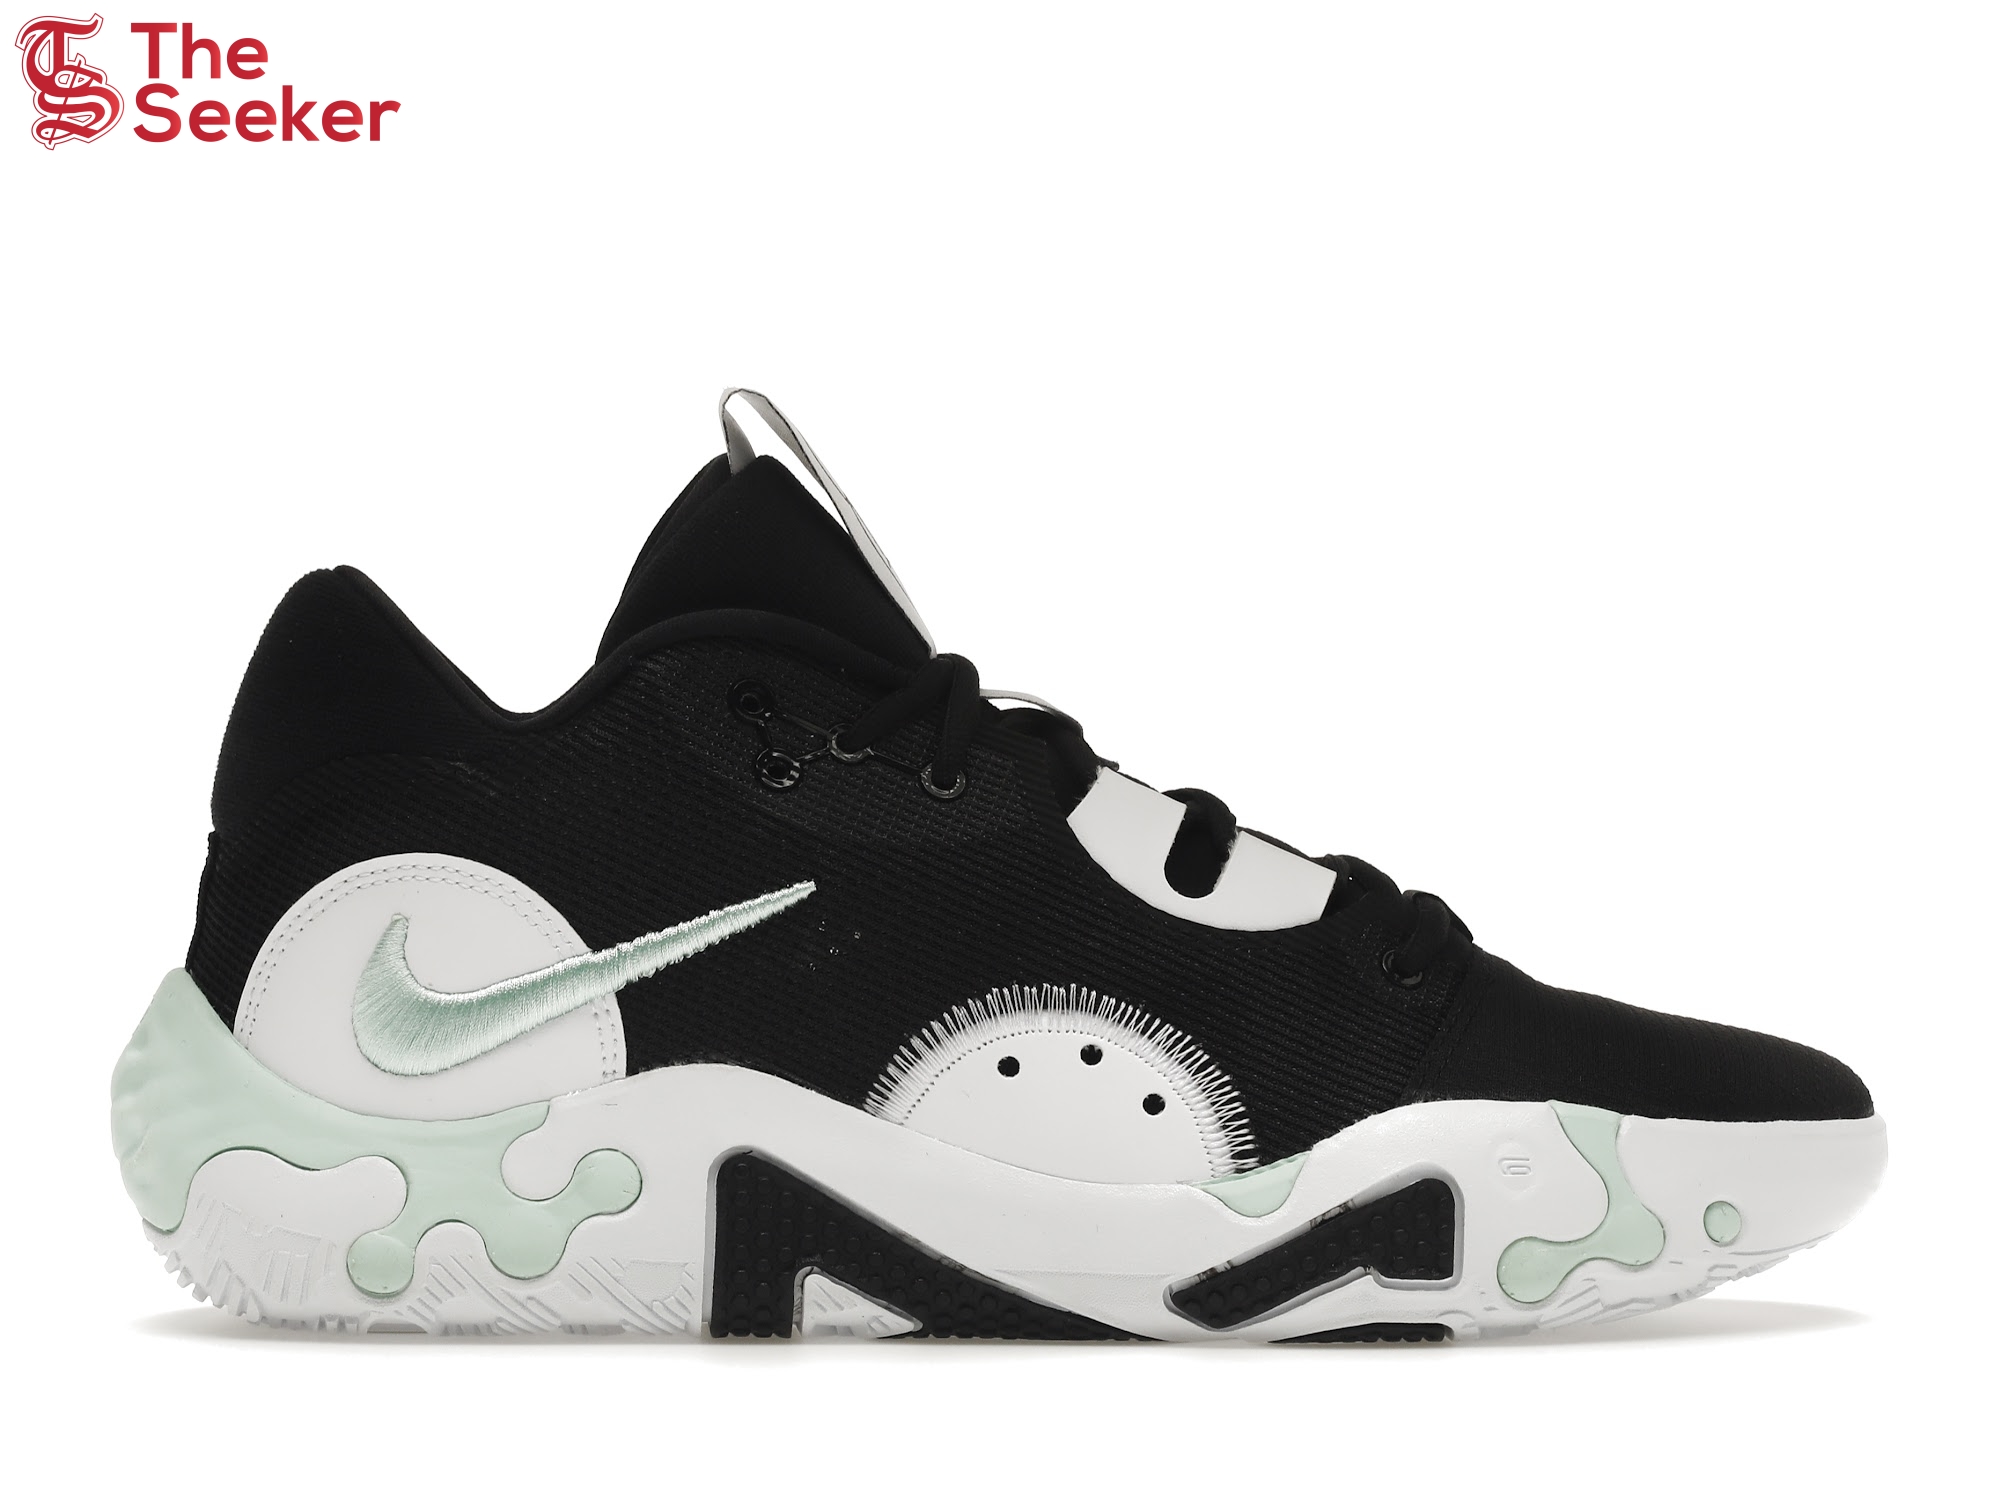 Nike PG 6 Black Mint